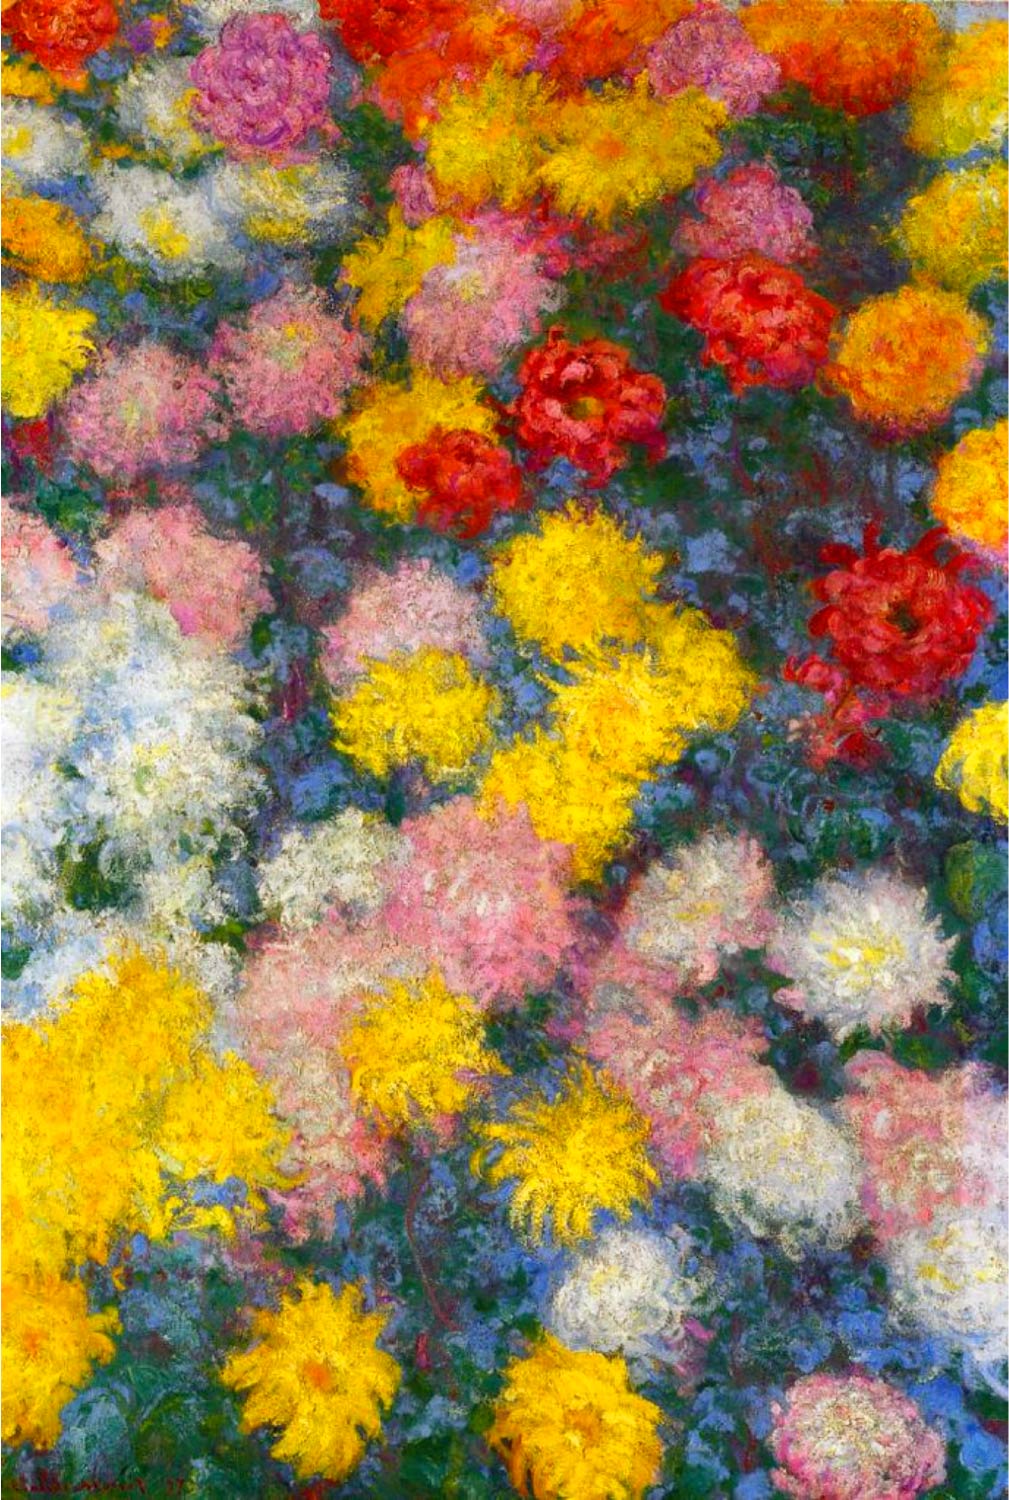 【無料壁紙】クロード・モネ「菊 (1897)」 / Claude Monet_Chrysanthemums (1897)